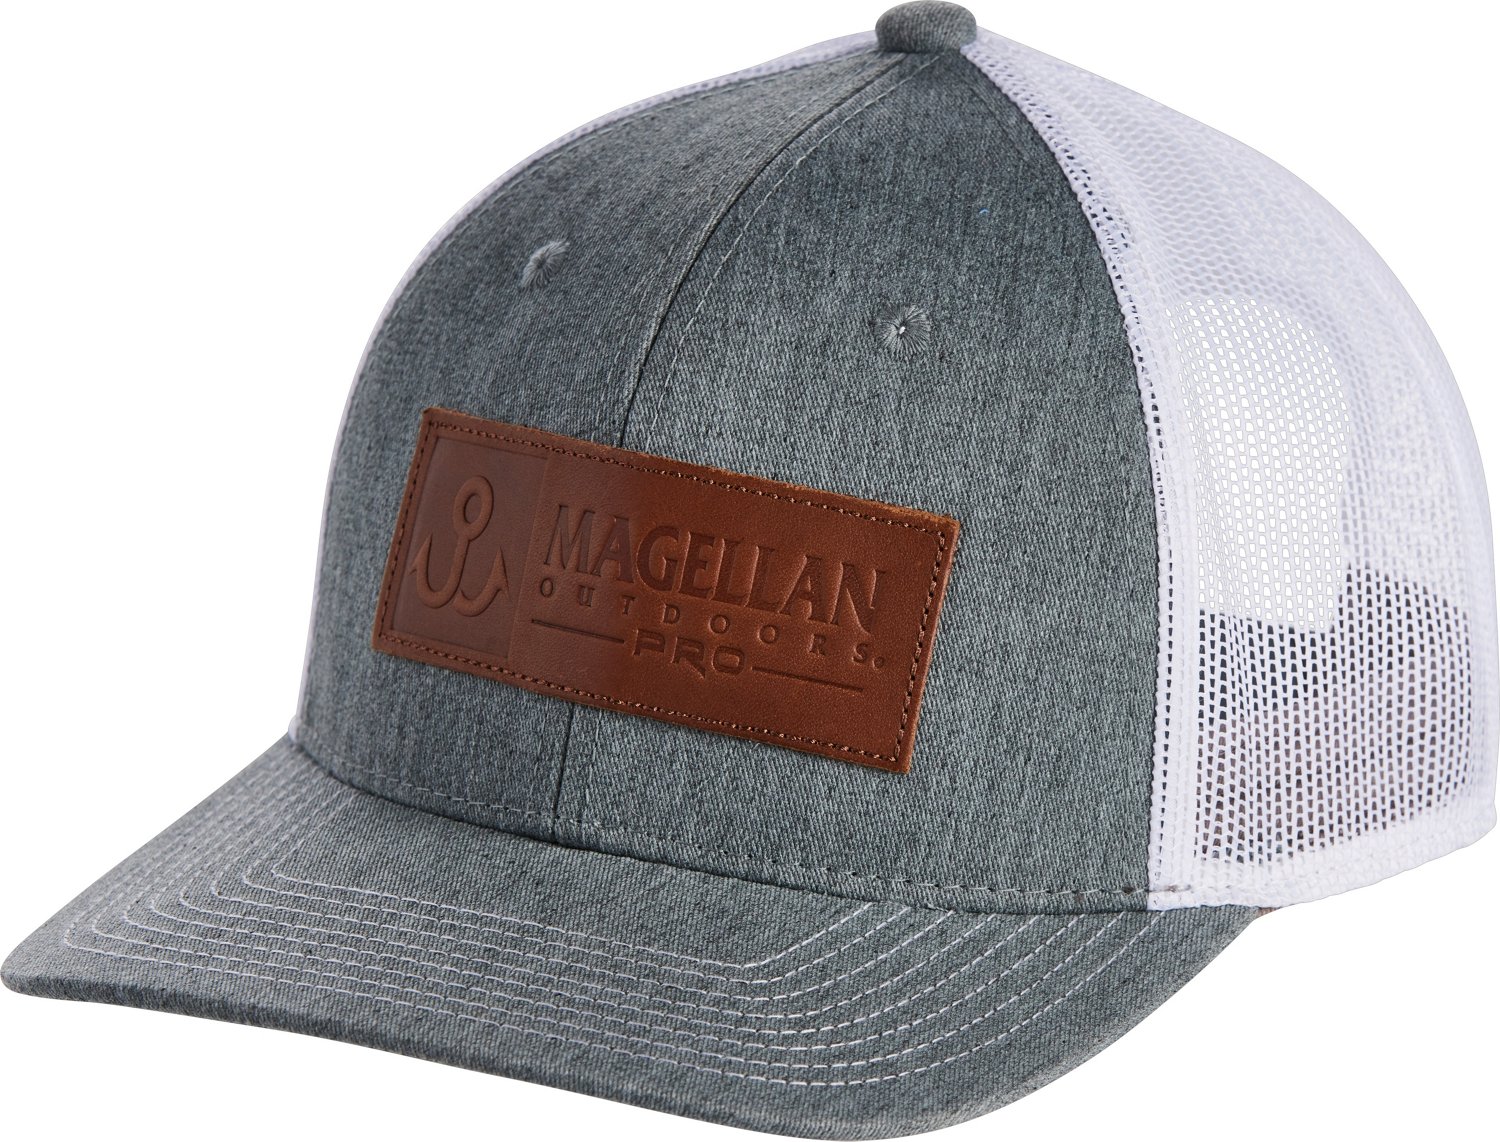 Magellan Outdoors Men's Pro Angler Jacob Wheeler Solid Cap | Academy